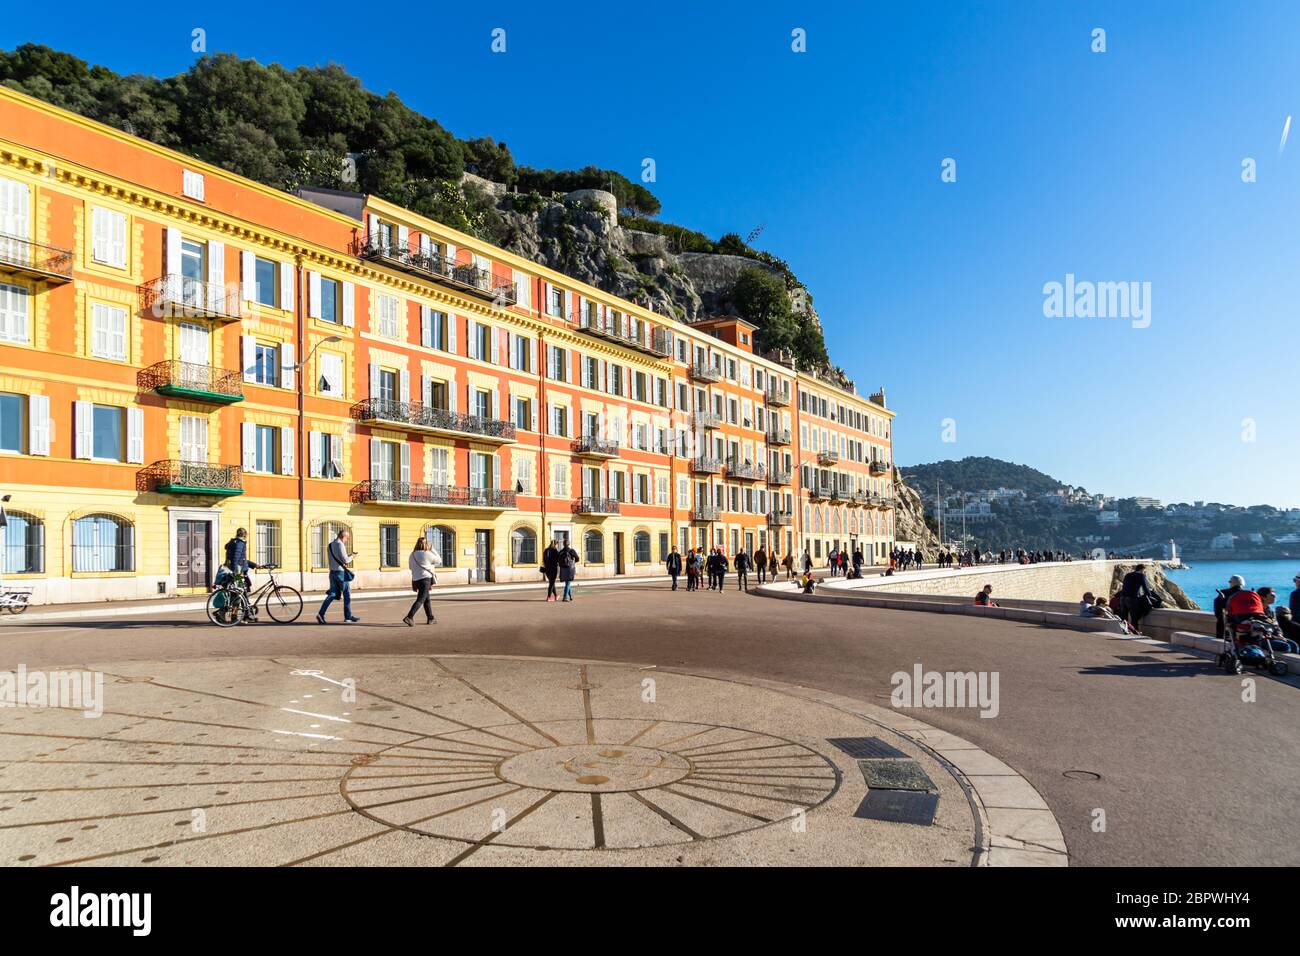 Un grand cadran solaire à la Promenade des Anglais, le célèbre front de mer de Nice. Nice, France, janvier 2020 Banque D'Images